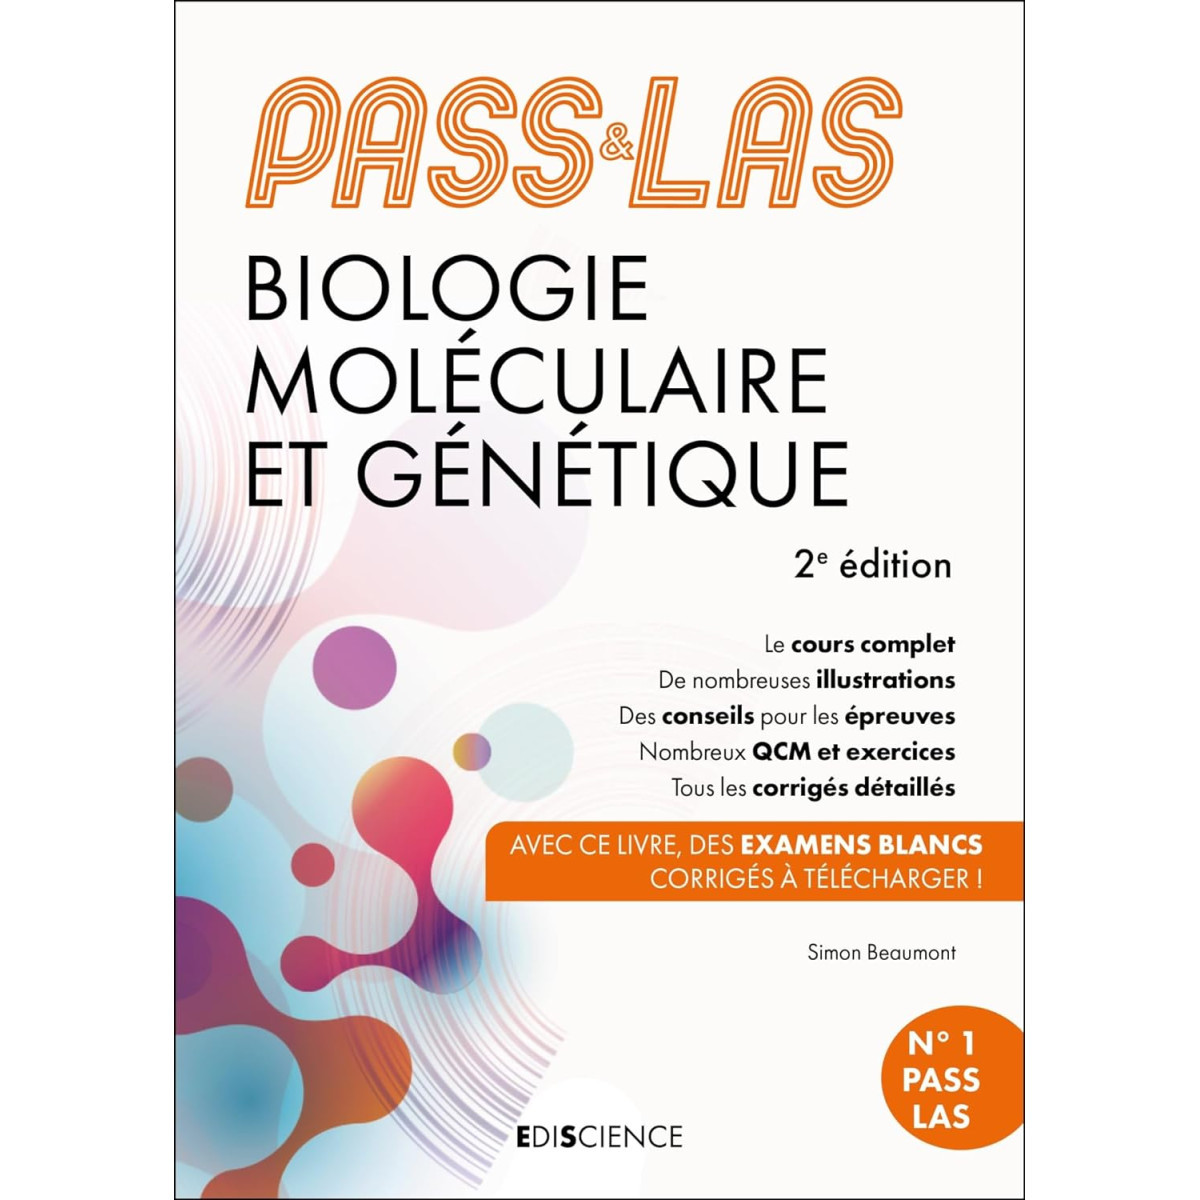 PASS & LAS Biologie moléculaire et Génétique - Manuel : cours + entraînements corrigés